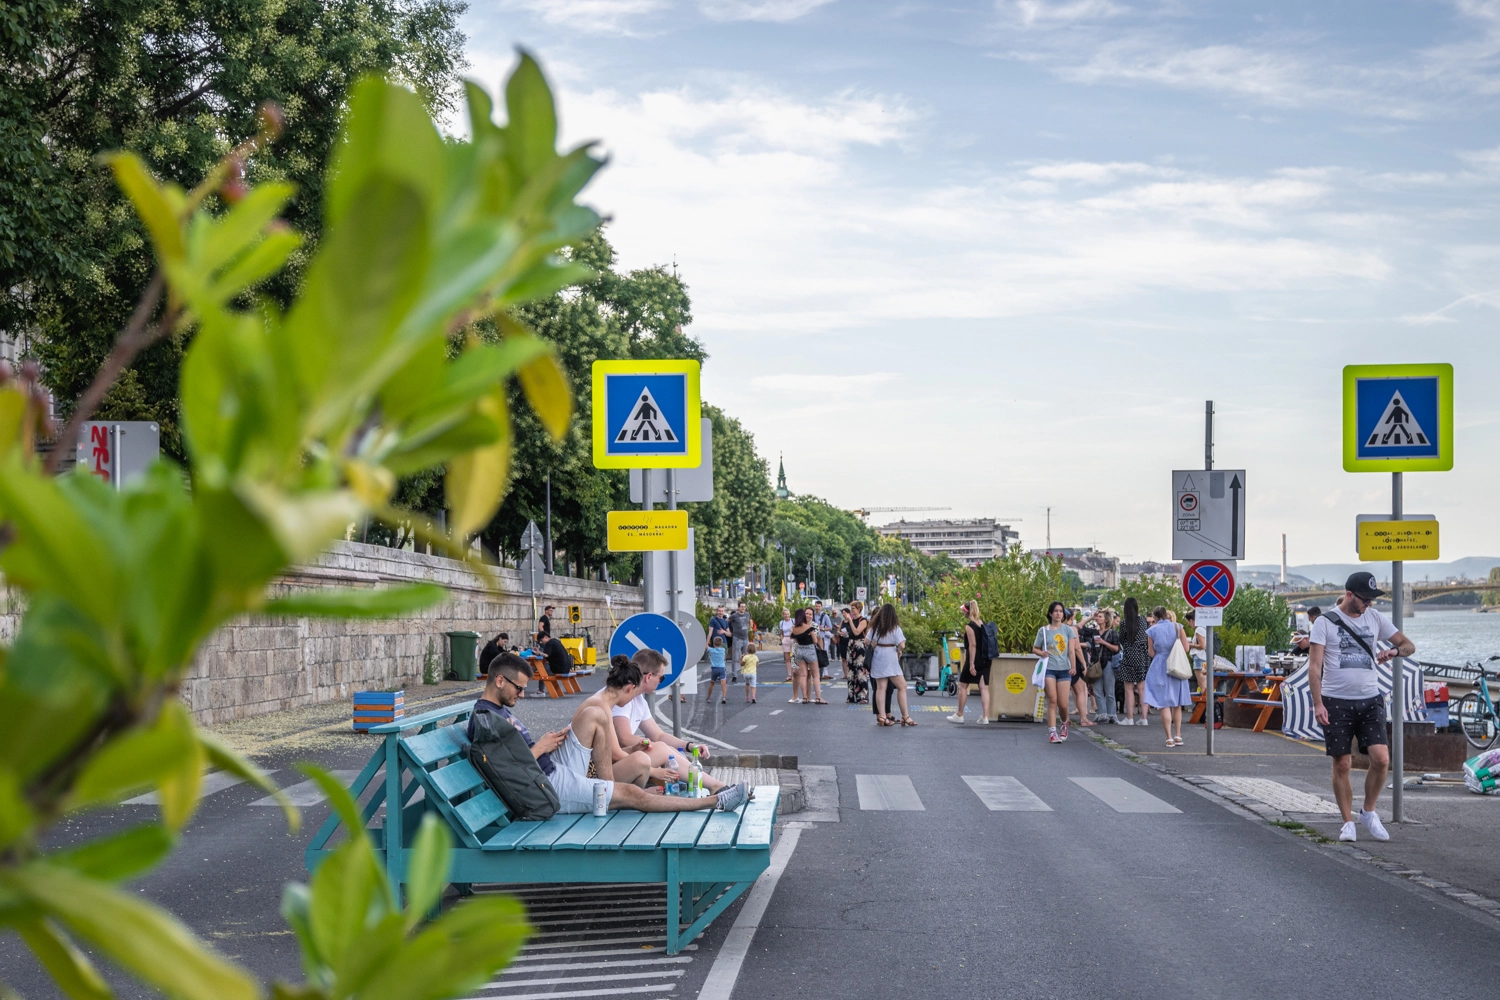 Pályázz, és töltsd meg a várost az ötleteiddel – újra itt a Budapest Tuning